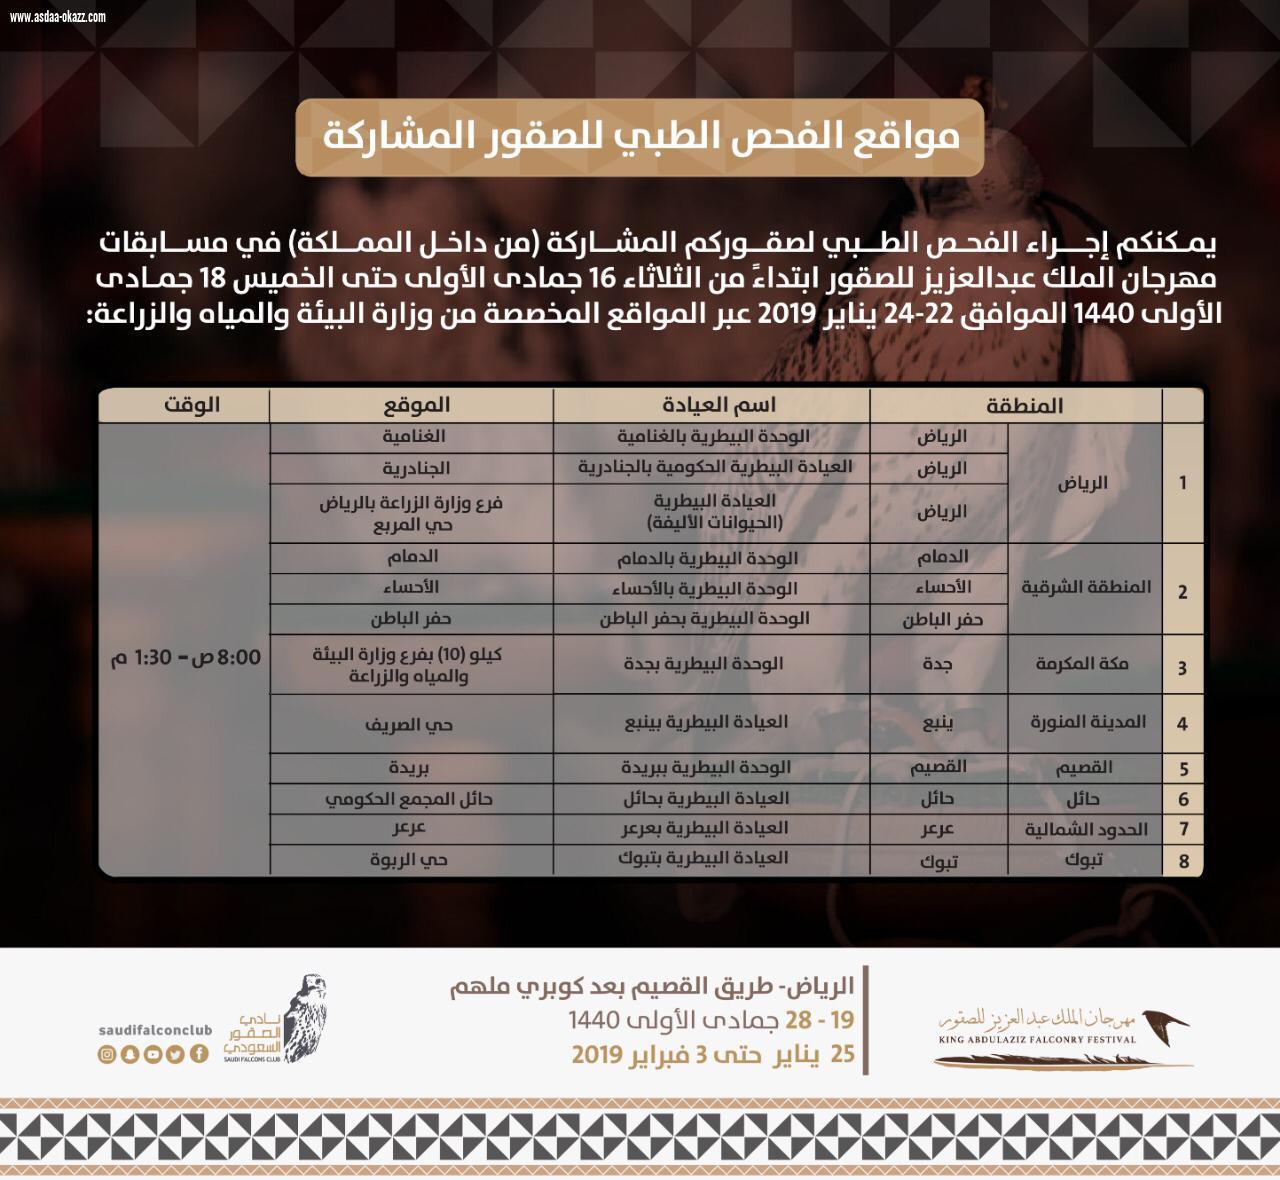 اللجنة المنظمة لمهرجان الملك عبدالعزيز للصقور تدعو الصقارين المشاركين لإجراء فحوصات طبية على صقورهم